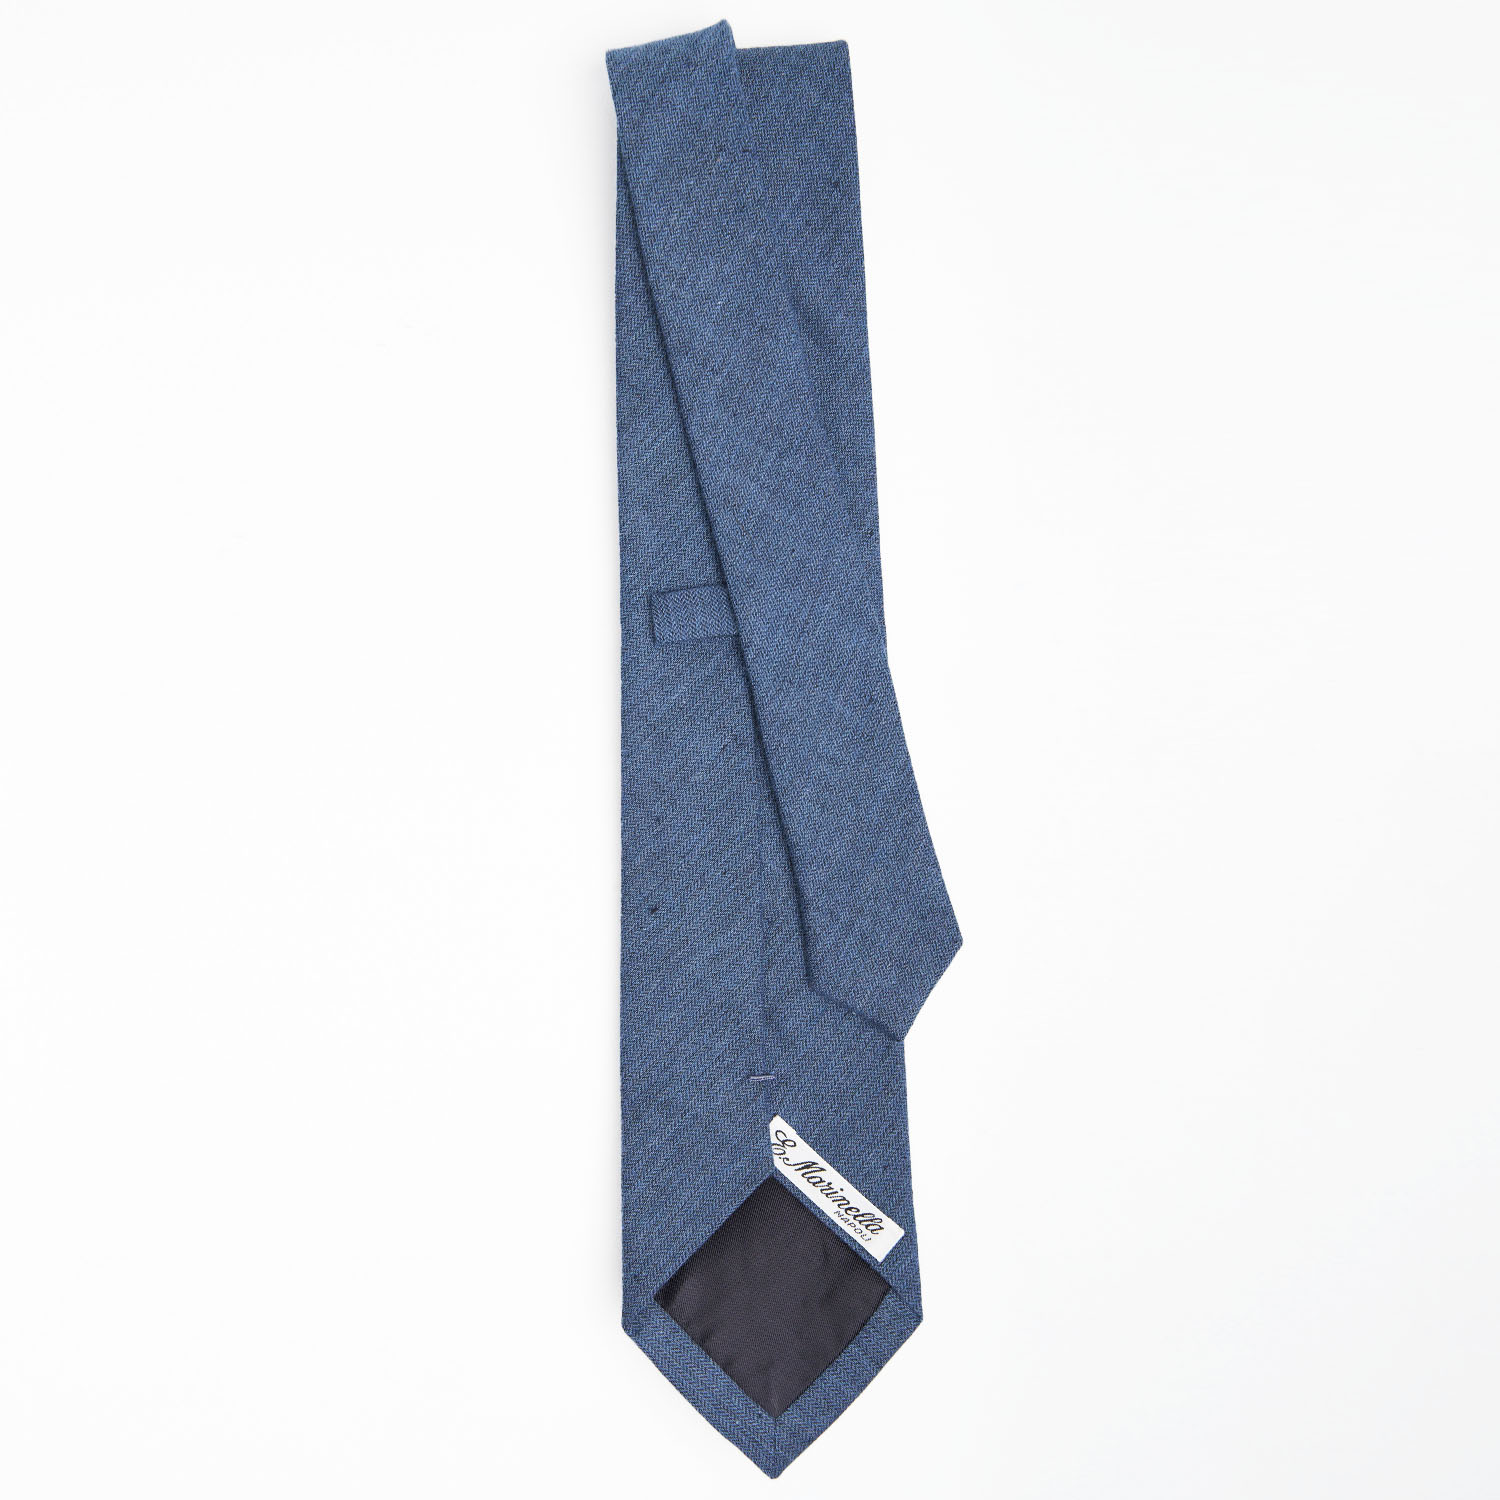 linen and cotton tie / cravatta lino e cotone